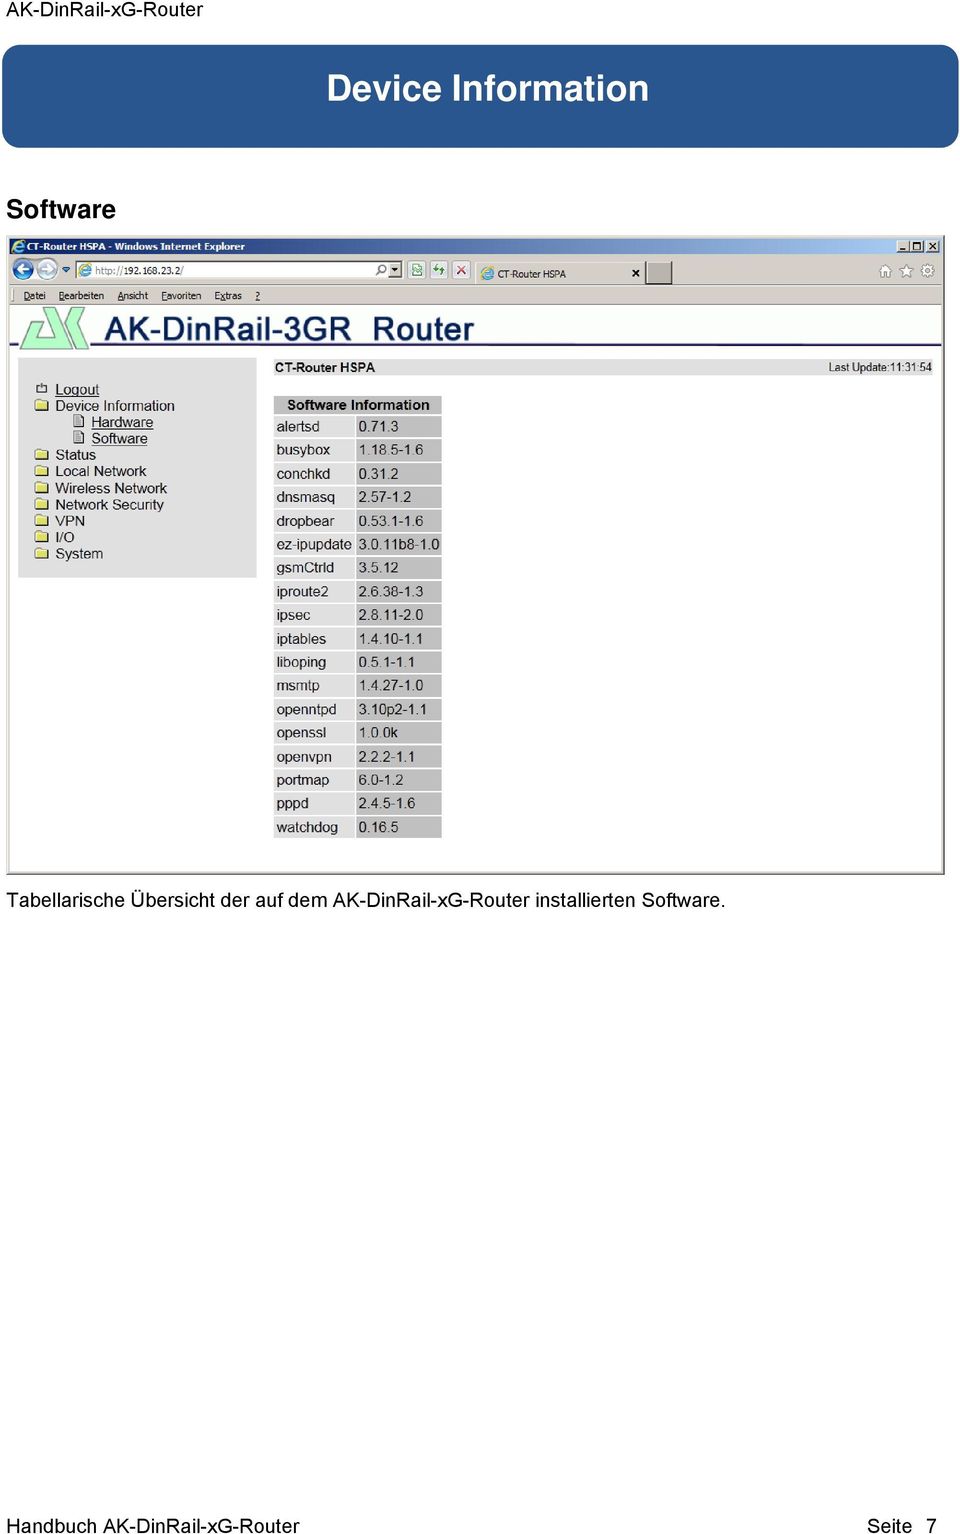 AK-DinRail-xG-Router installierten